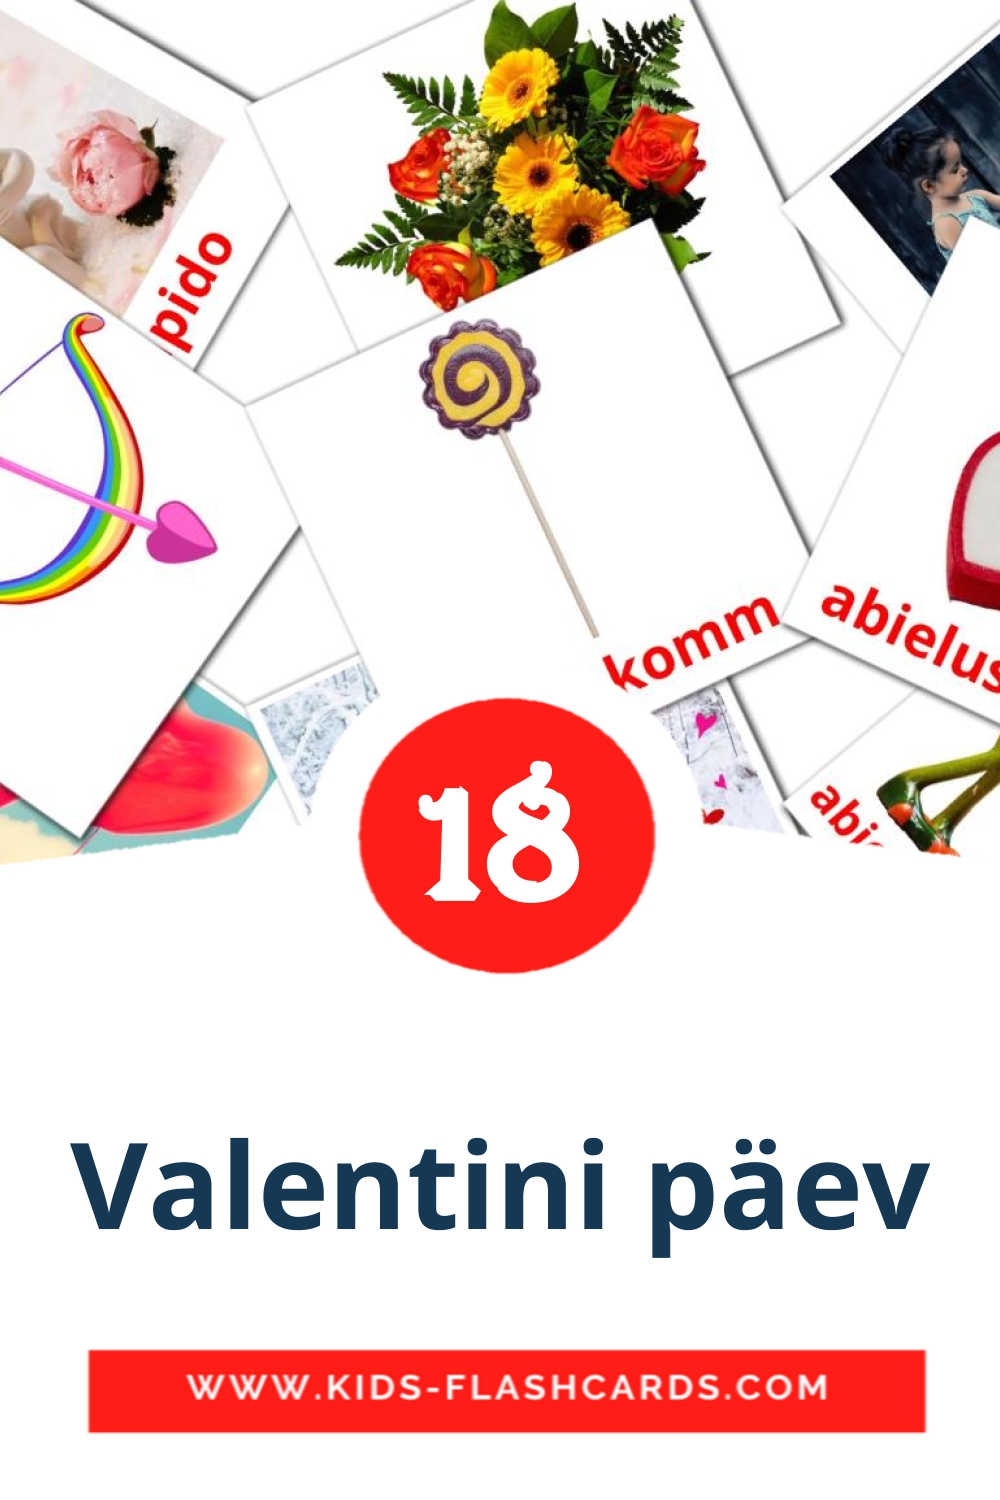 18 Valentini päev fotokaarten voor kleuters in het estlands